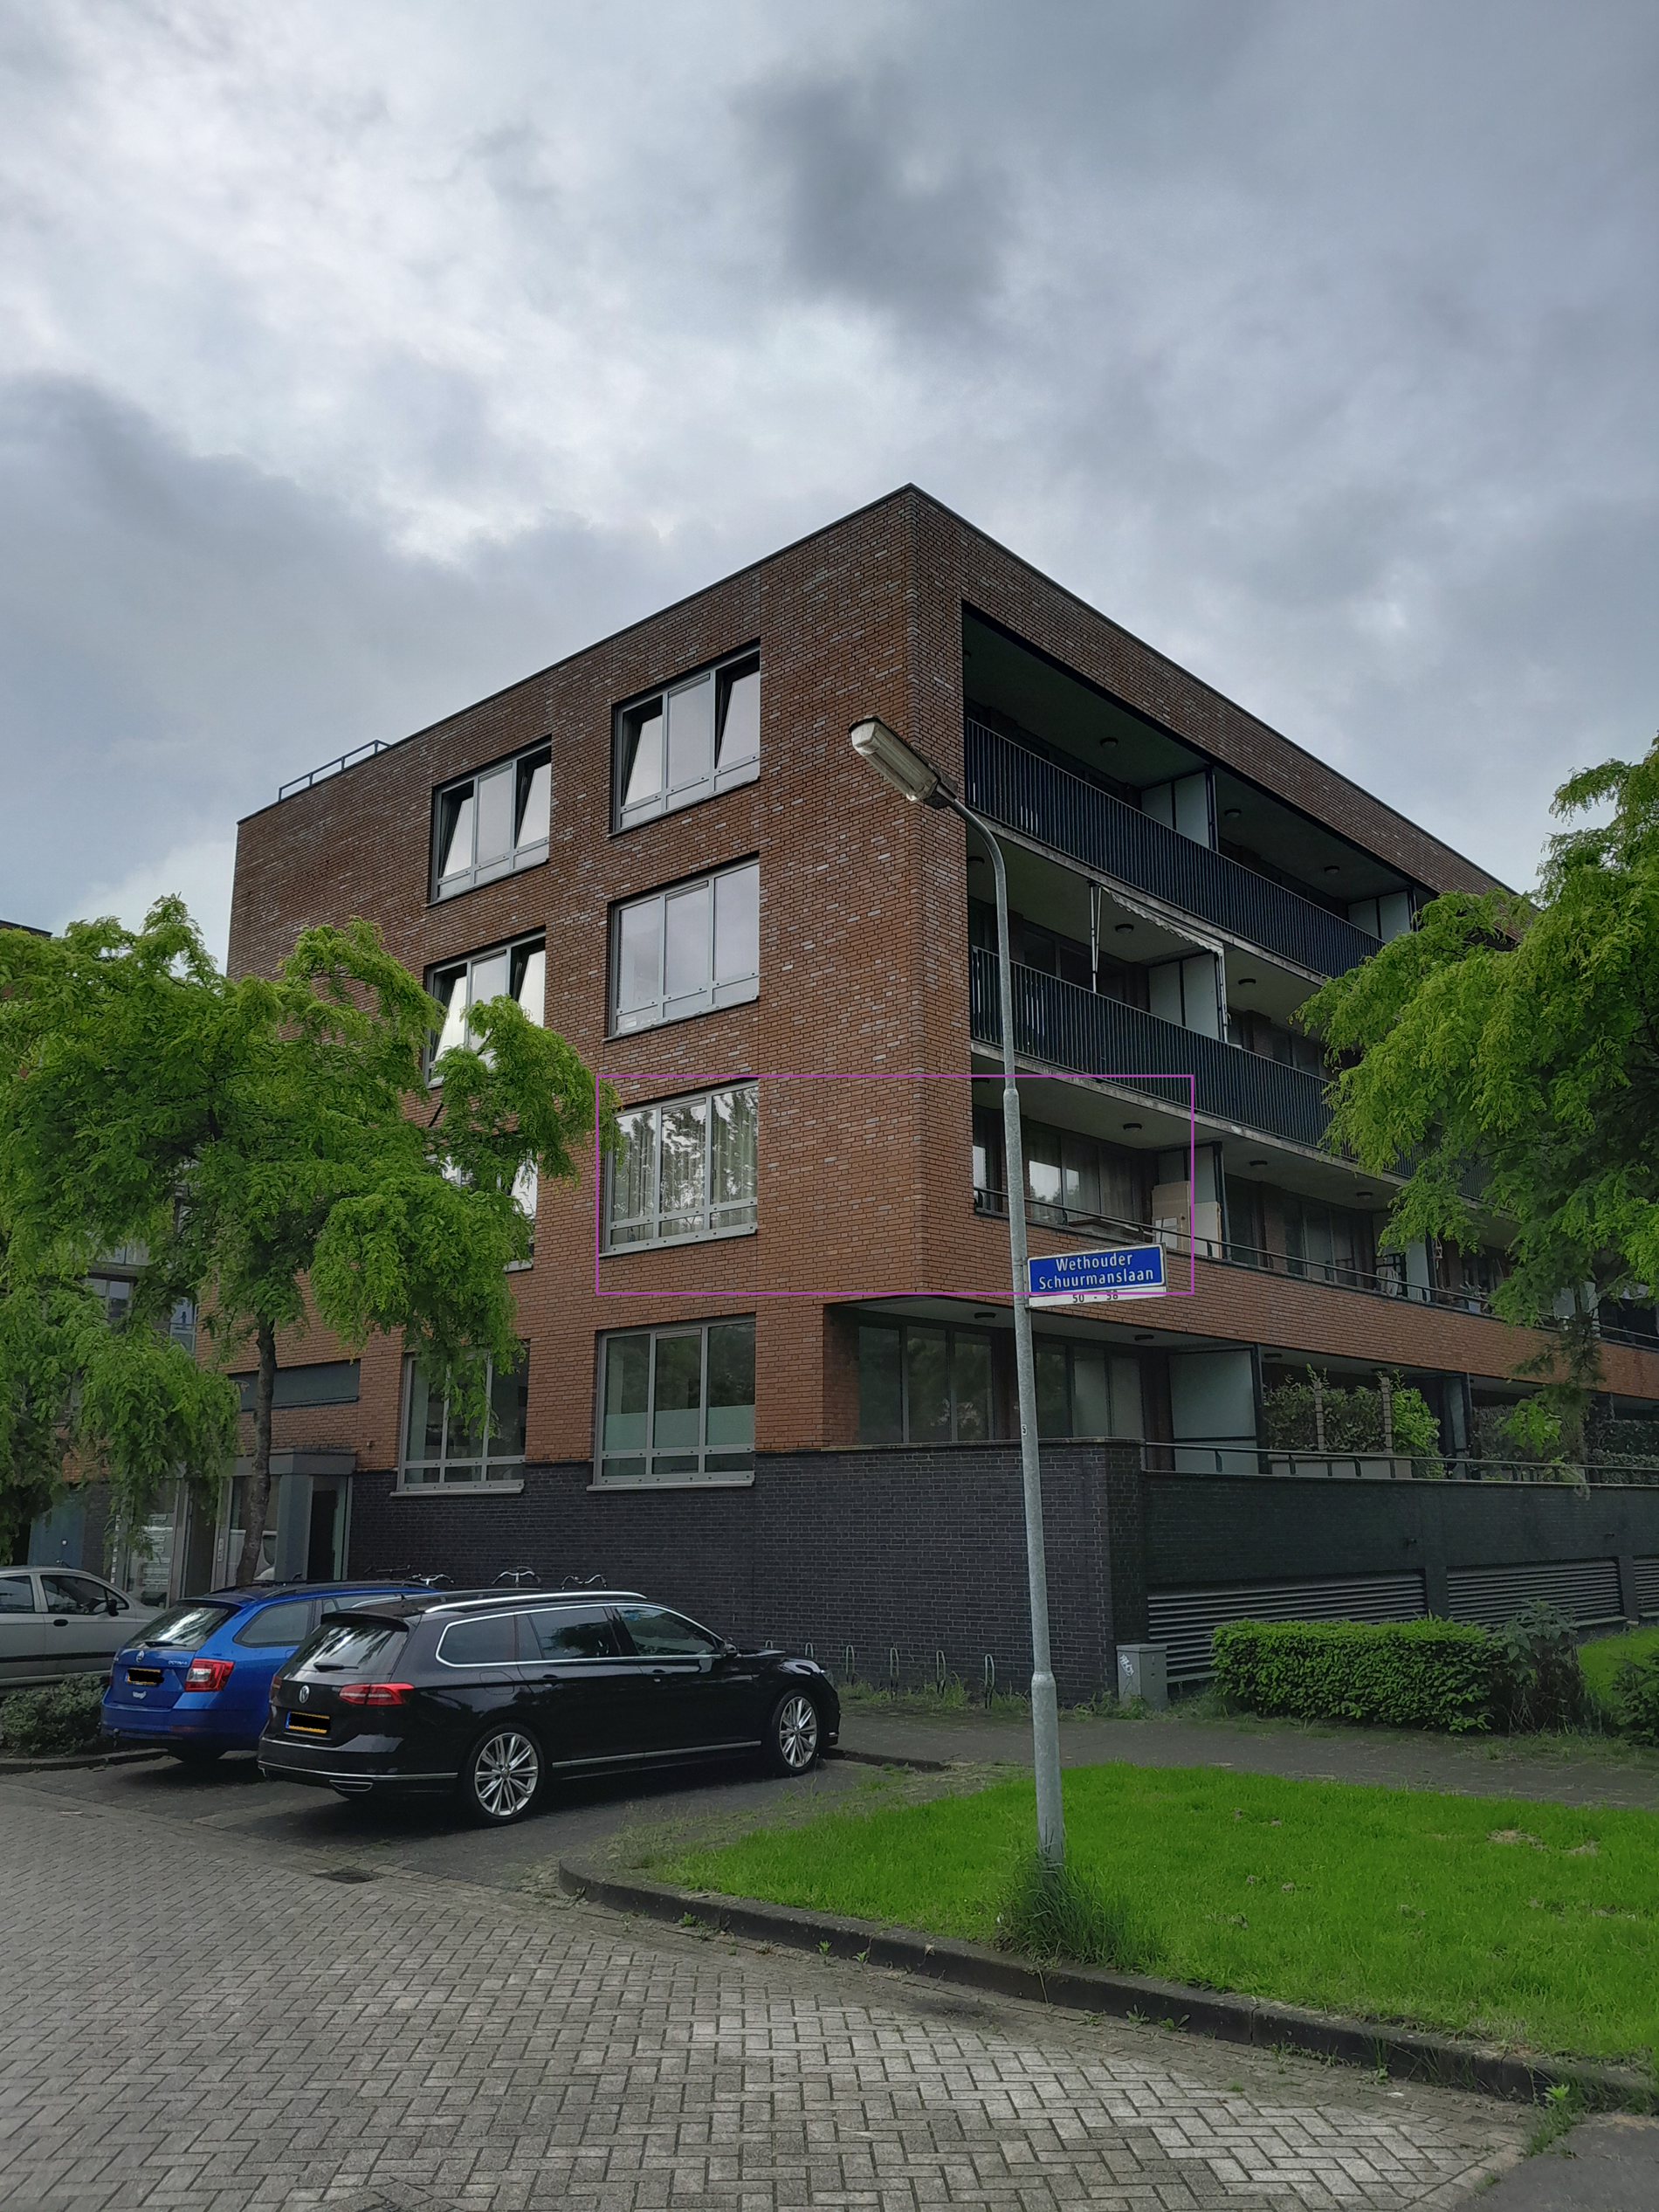 Wethouder Schuurmanslaan 42, 5231 GS 's-Hertogenbosch, Nederland